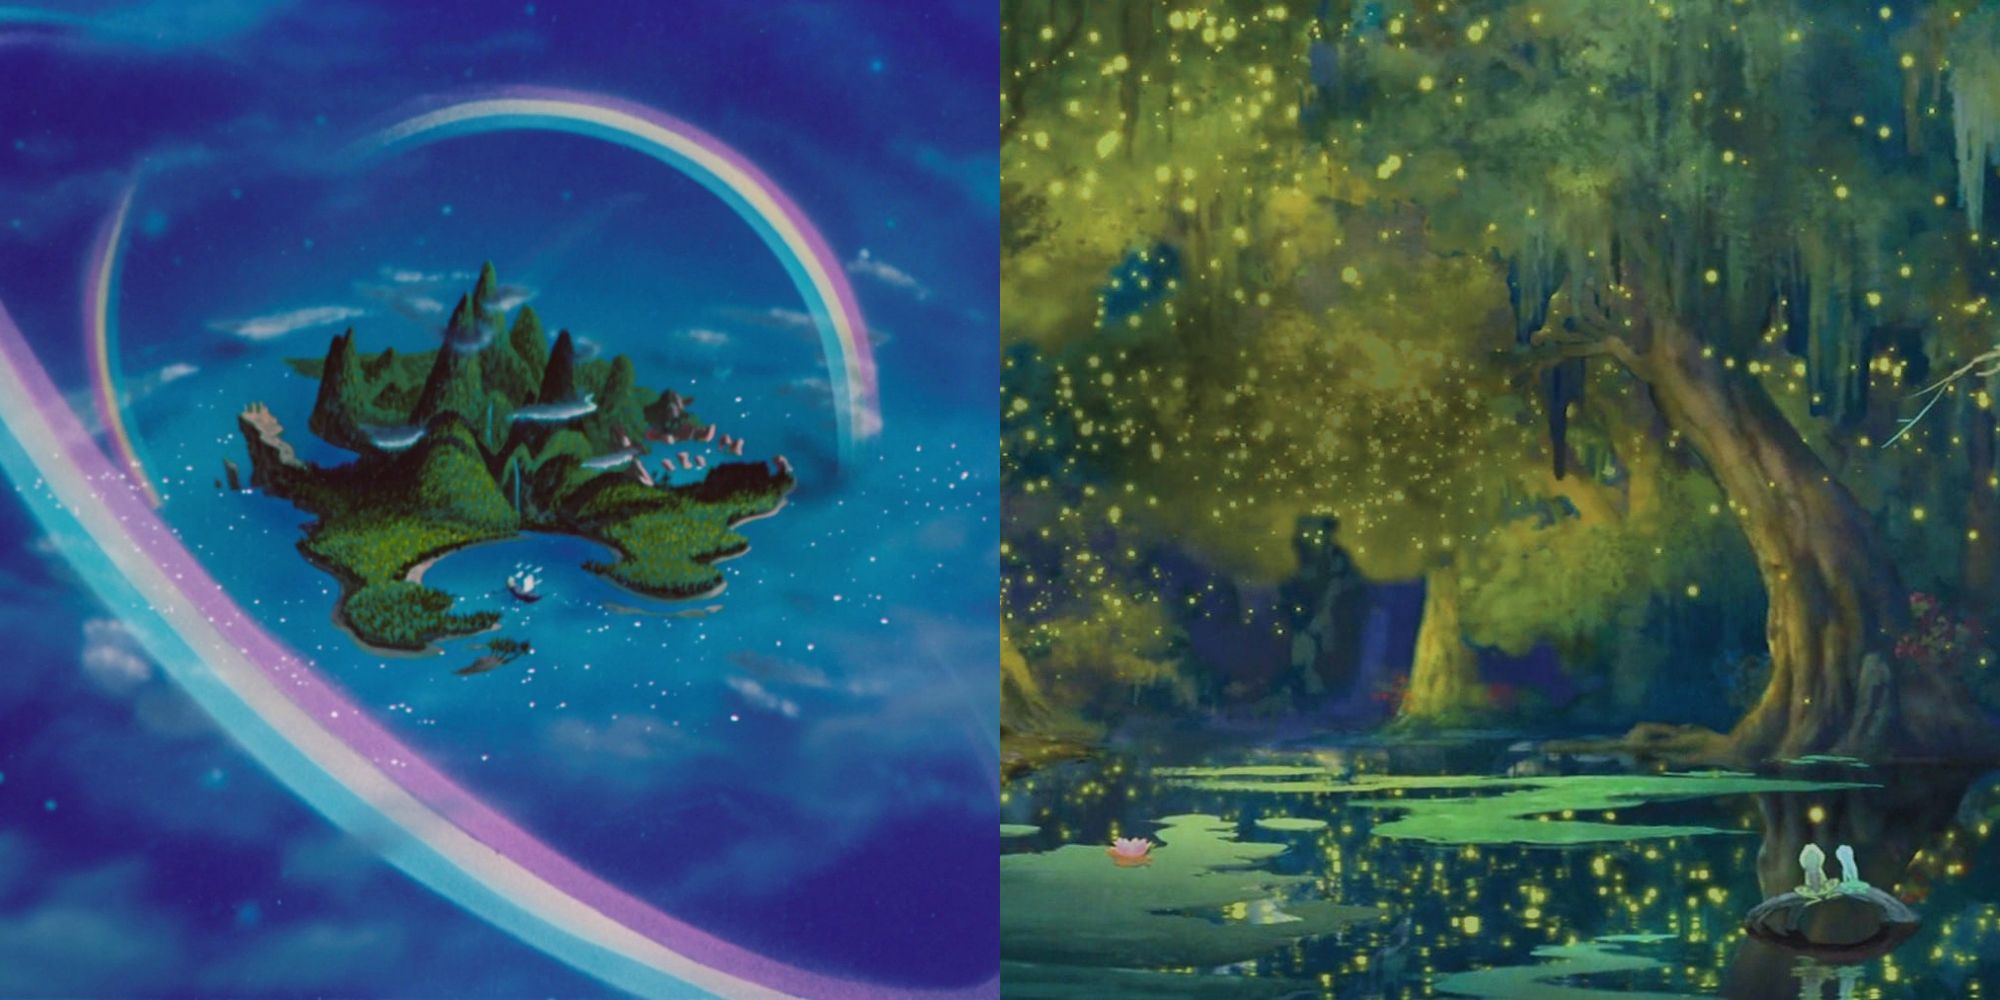 A Terra do Nunca de Peter Pan e o pântano de A Princesa e o Sapo podem aparecer no Disney Dreamlight Valley.